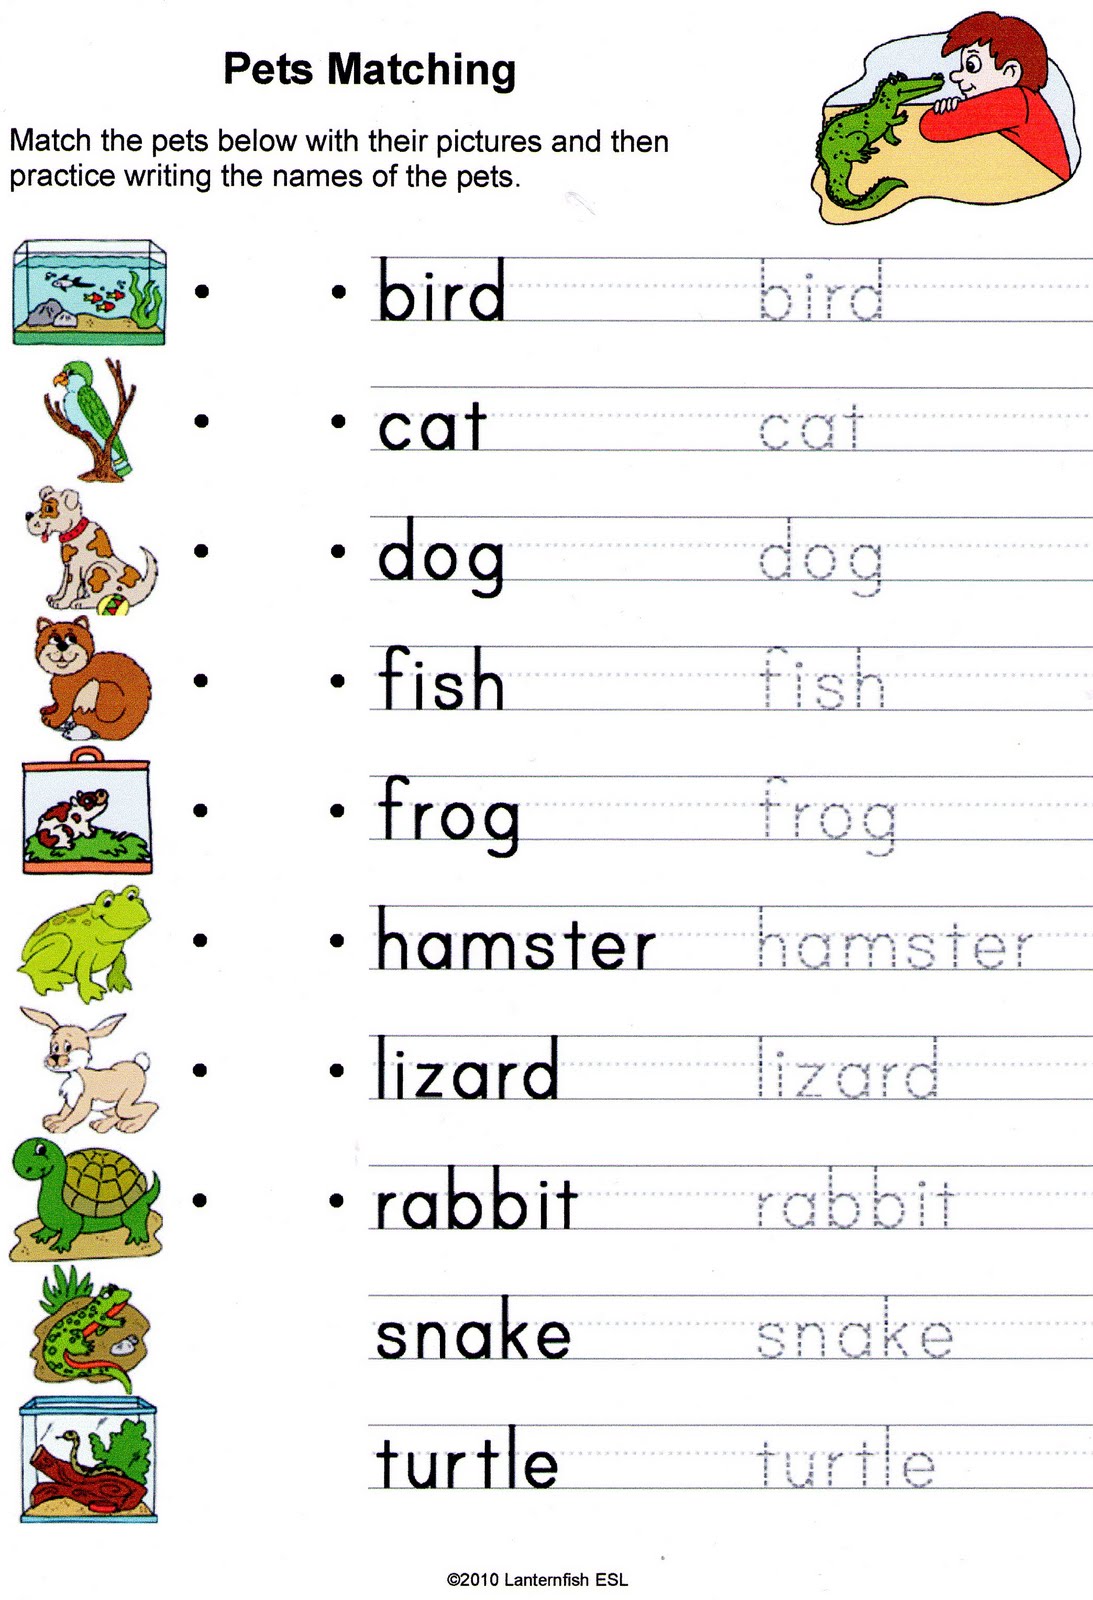 English Vocabulary Worksheets